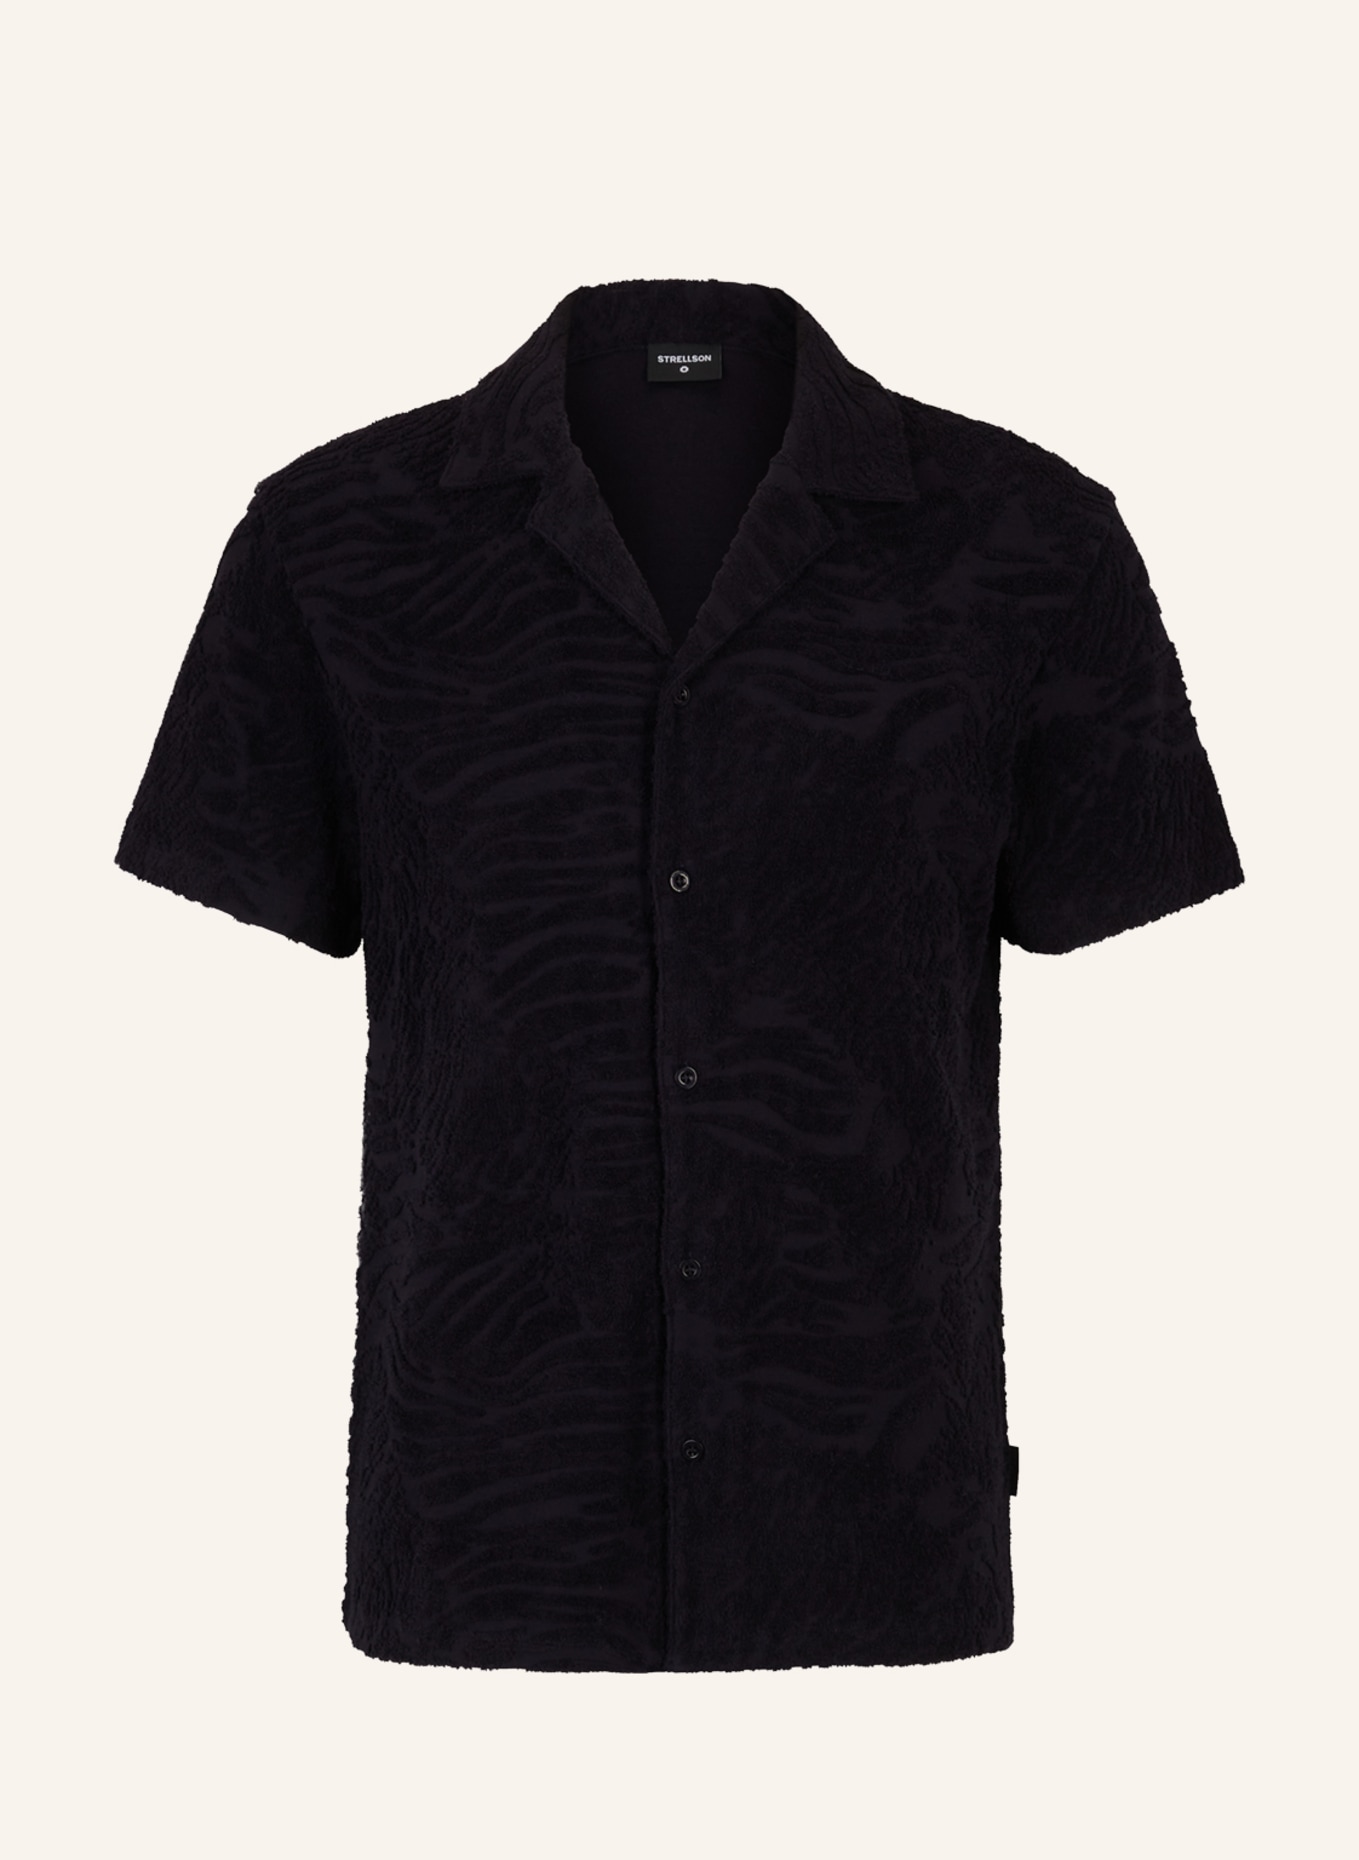 STRELLSON Shirt JACQUARD-SHIRT JOSEPH, DUNKELBLAU GEMUSTERT, Farbe: DUNKELBLAU (Bild 1)